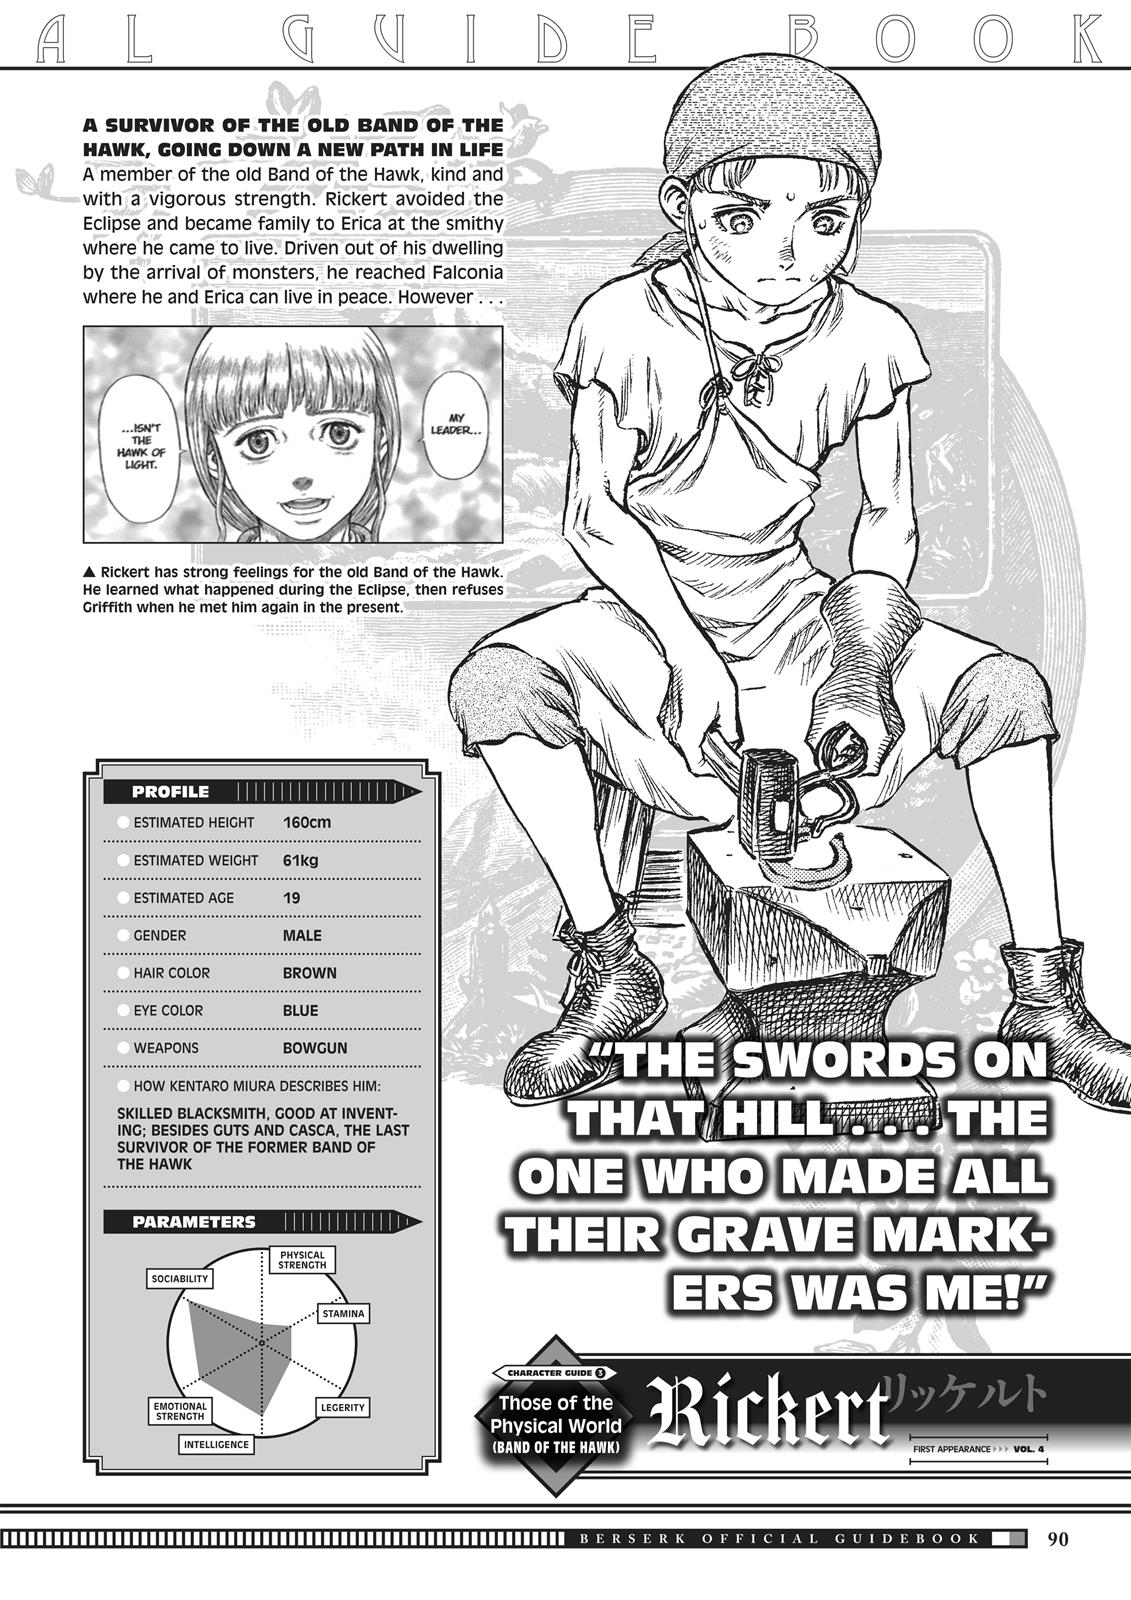 Berserk Manga Chapter 350.5 image 088